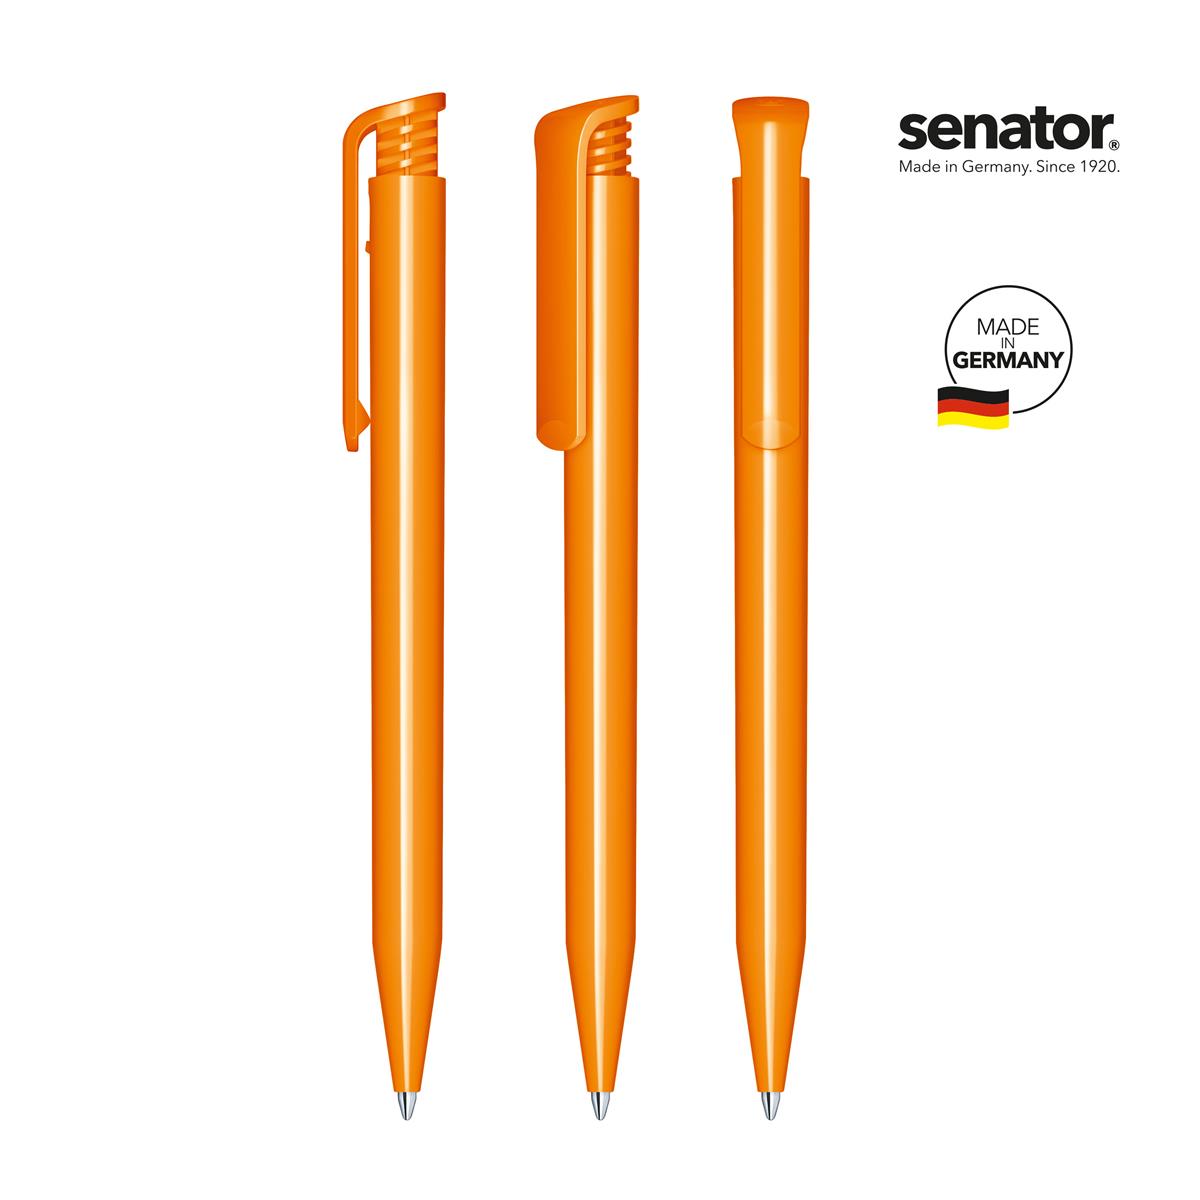 2883-senator-super-hit-polished-pms-151-5-p